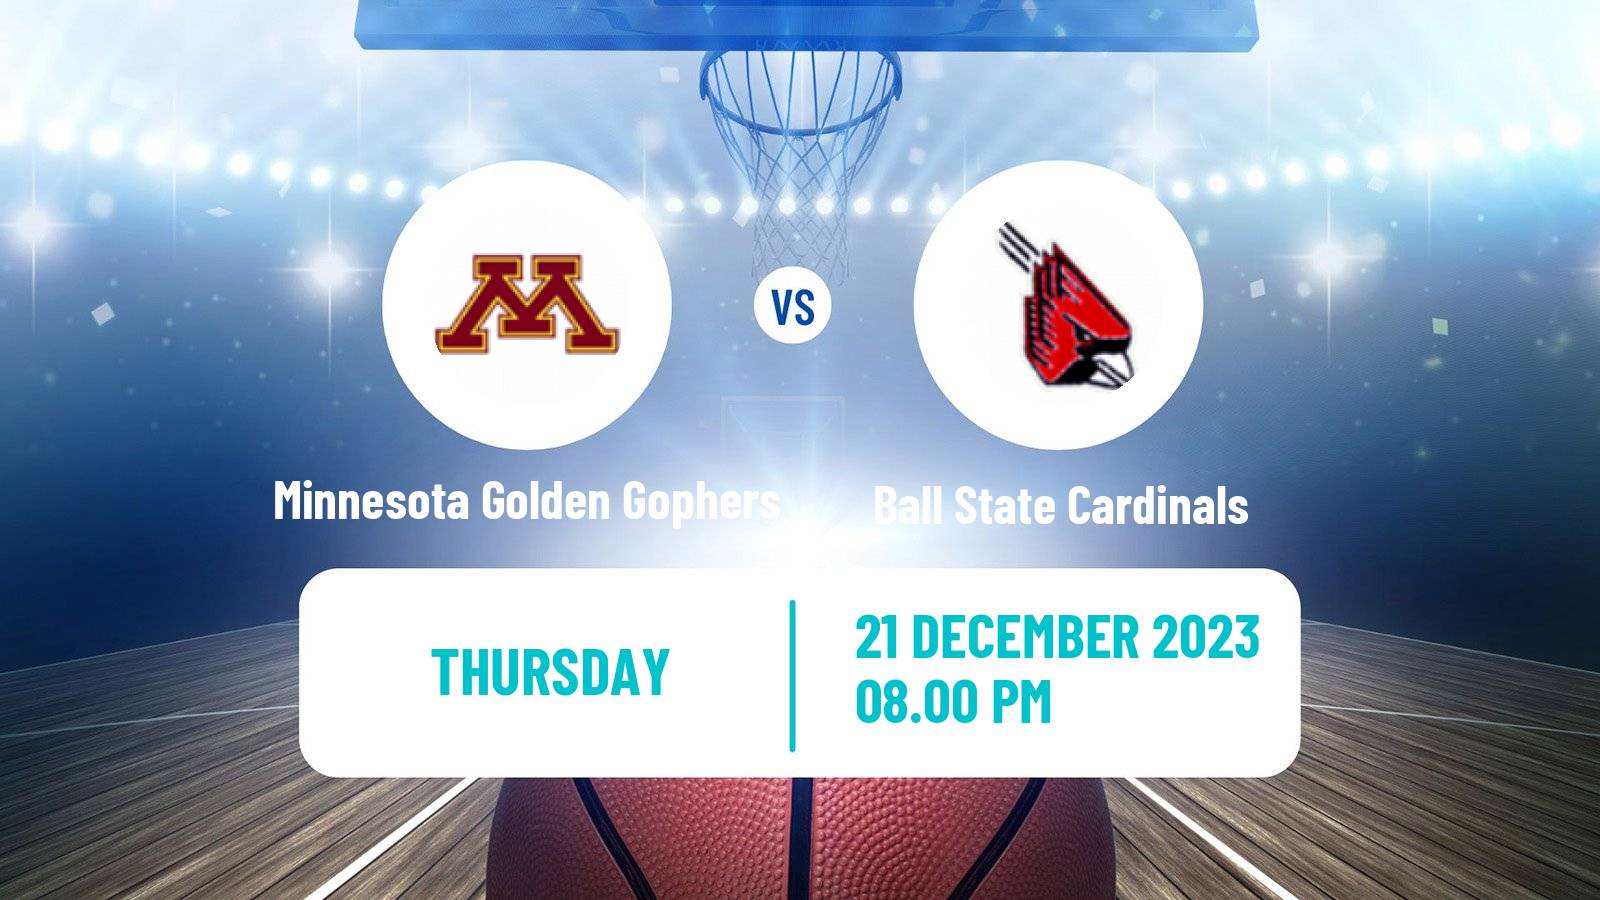 Basketball NCAA College Basketball Minnesota Golden Gophers - Ball State Cardinals